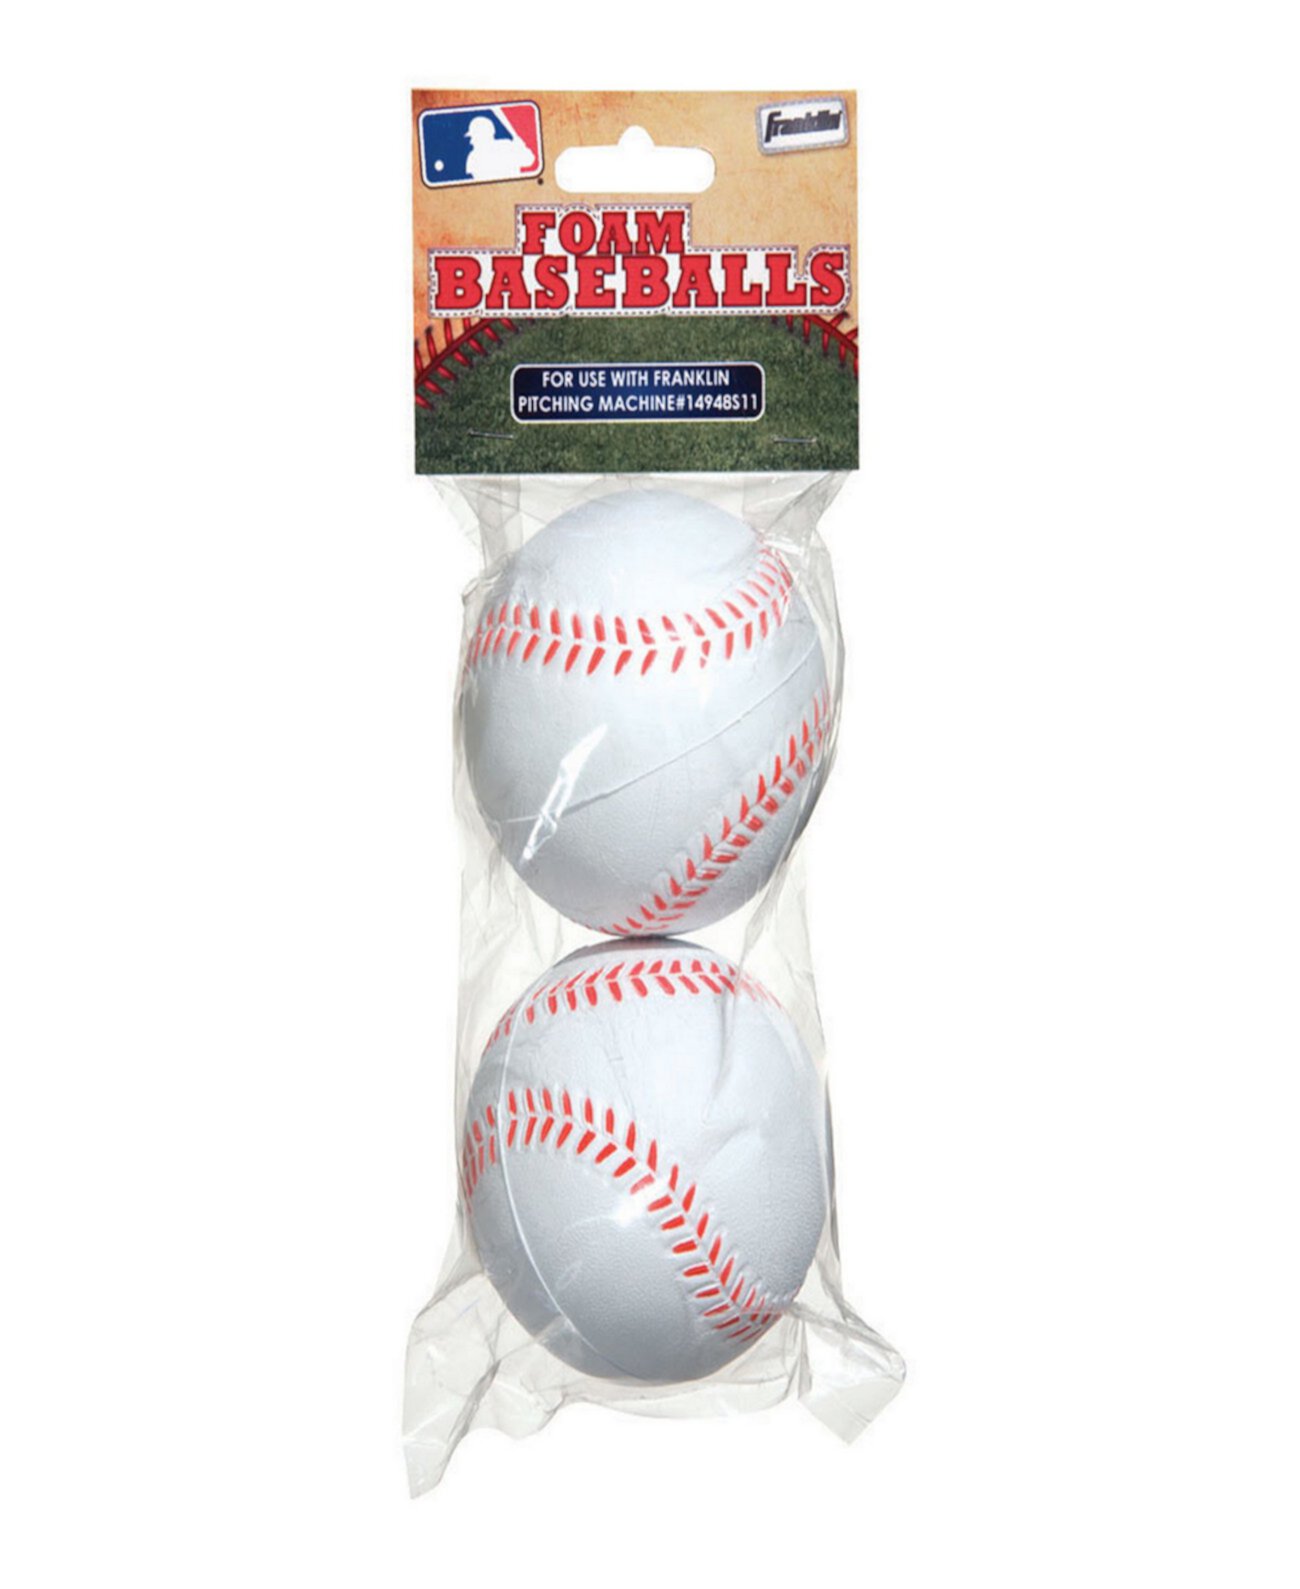 Сменные пенопластовые шарики, 2 шт. в упаковке Franklin Sports